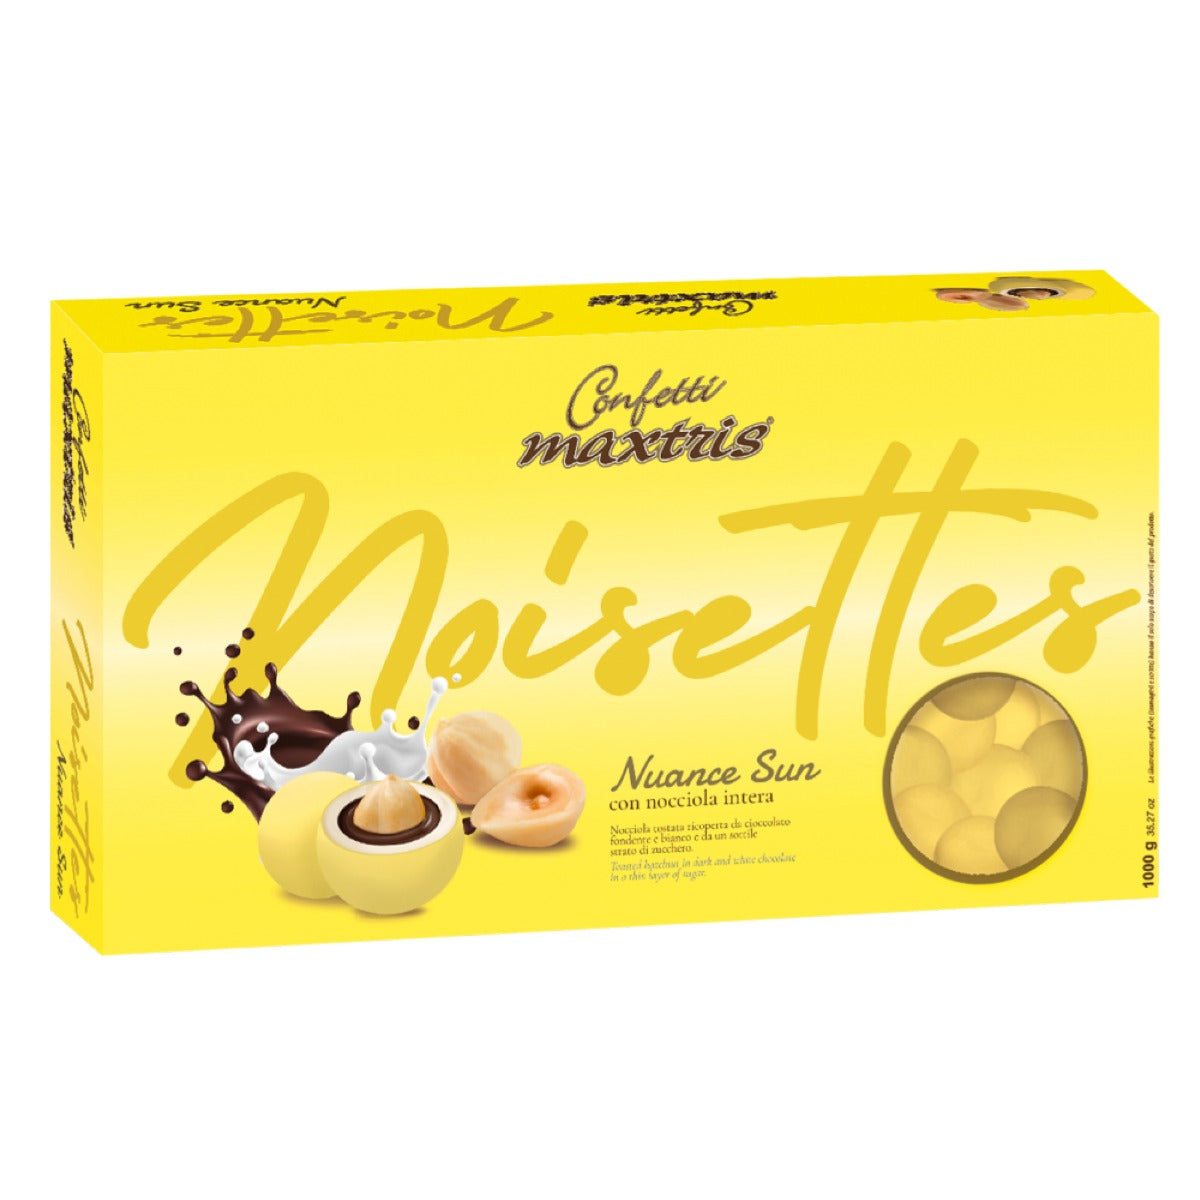 Confetti Maxtris ciocconocciola nuance giallo